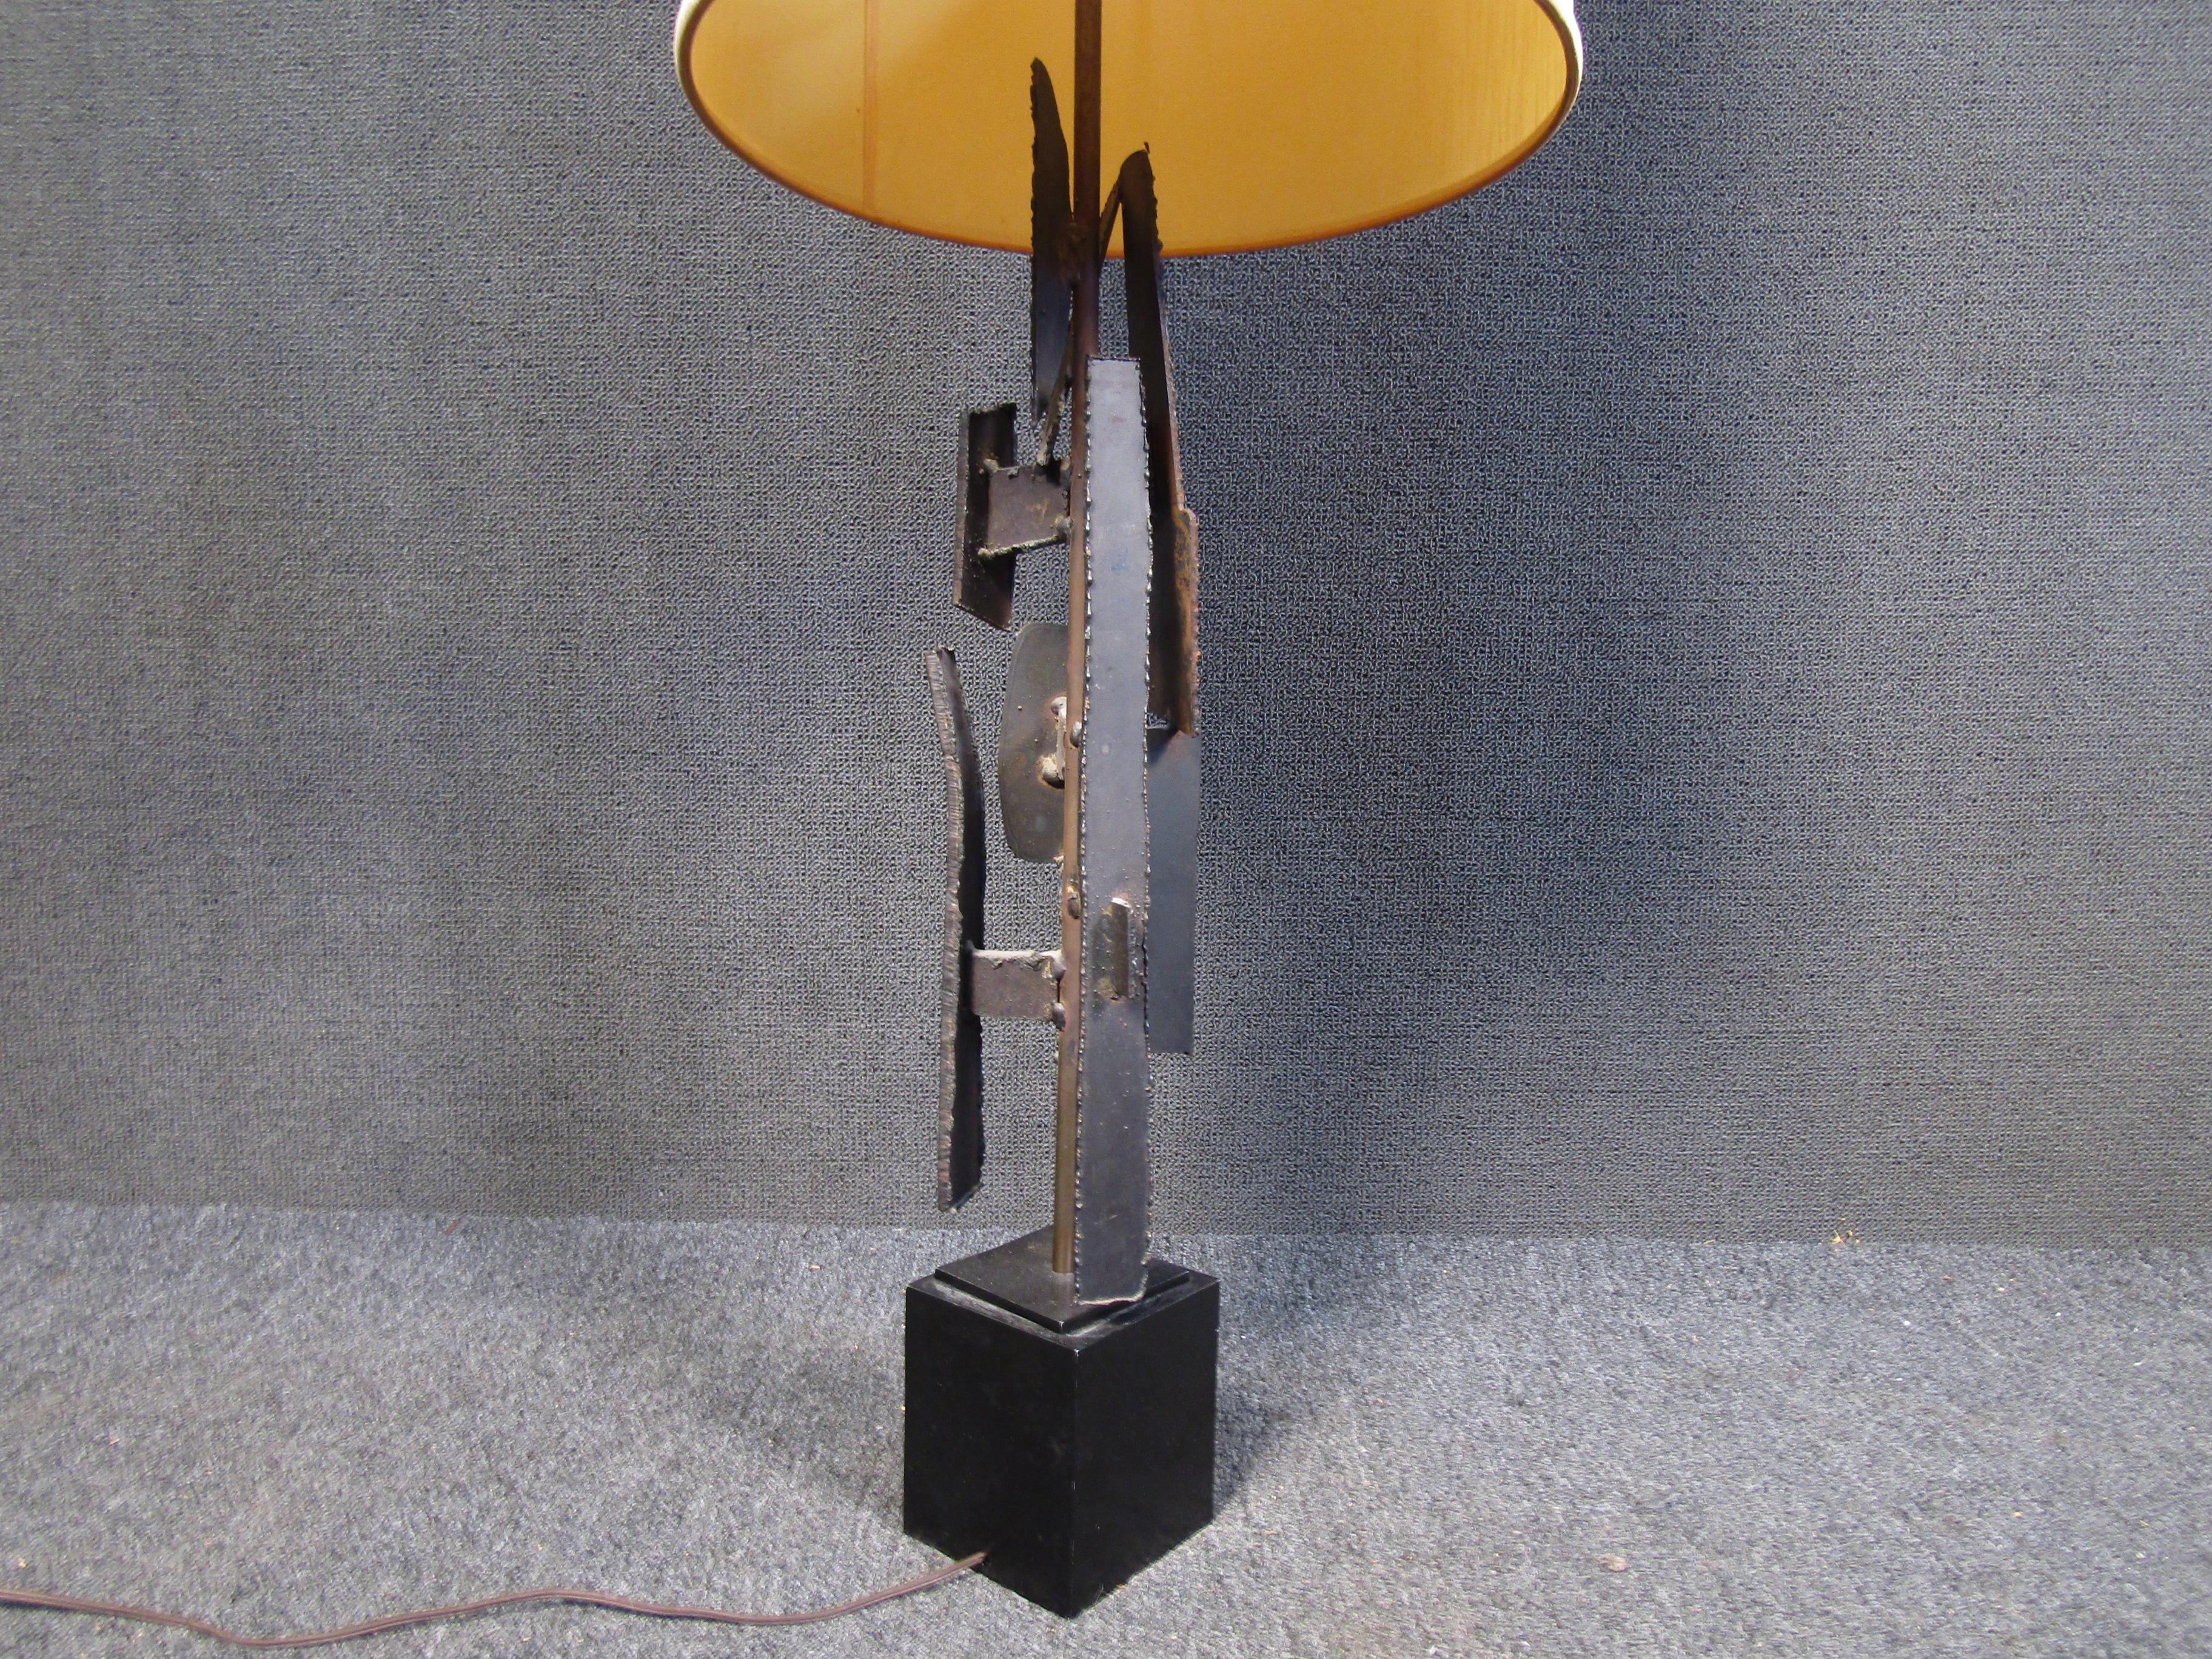 Diese brutalistische Lampe aus Schmiedeeisen wurde von Richard Barr für Laurel Lamp Co. entworfen und wird mit dem Schirm geliefert. 
Bitte bestätigen Sie den Standort des Artikels (NJ oder NY).